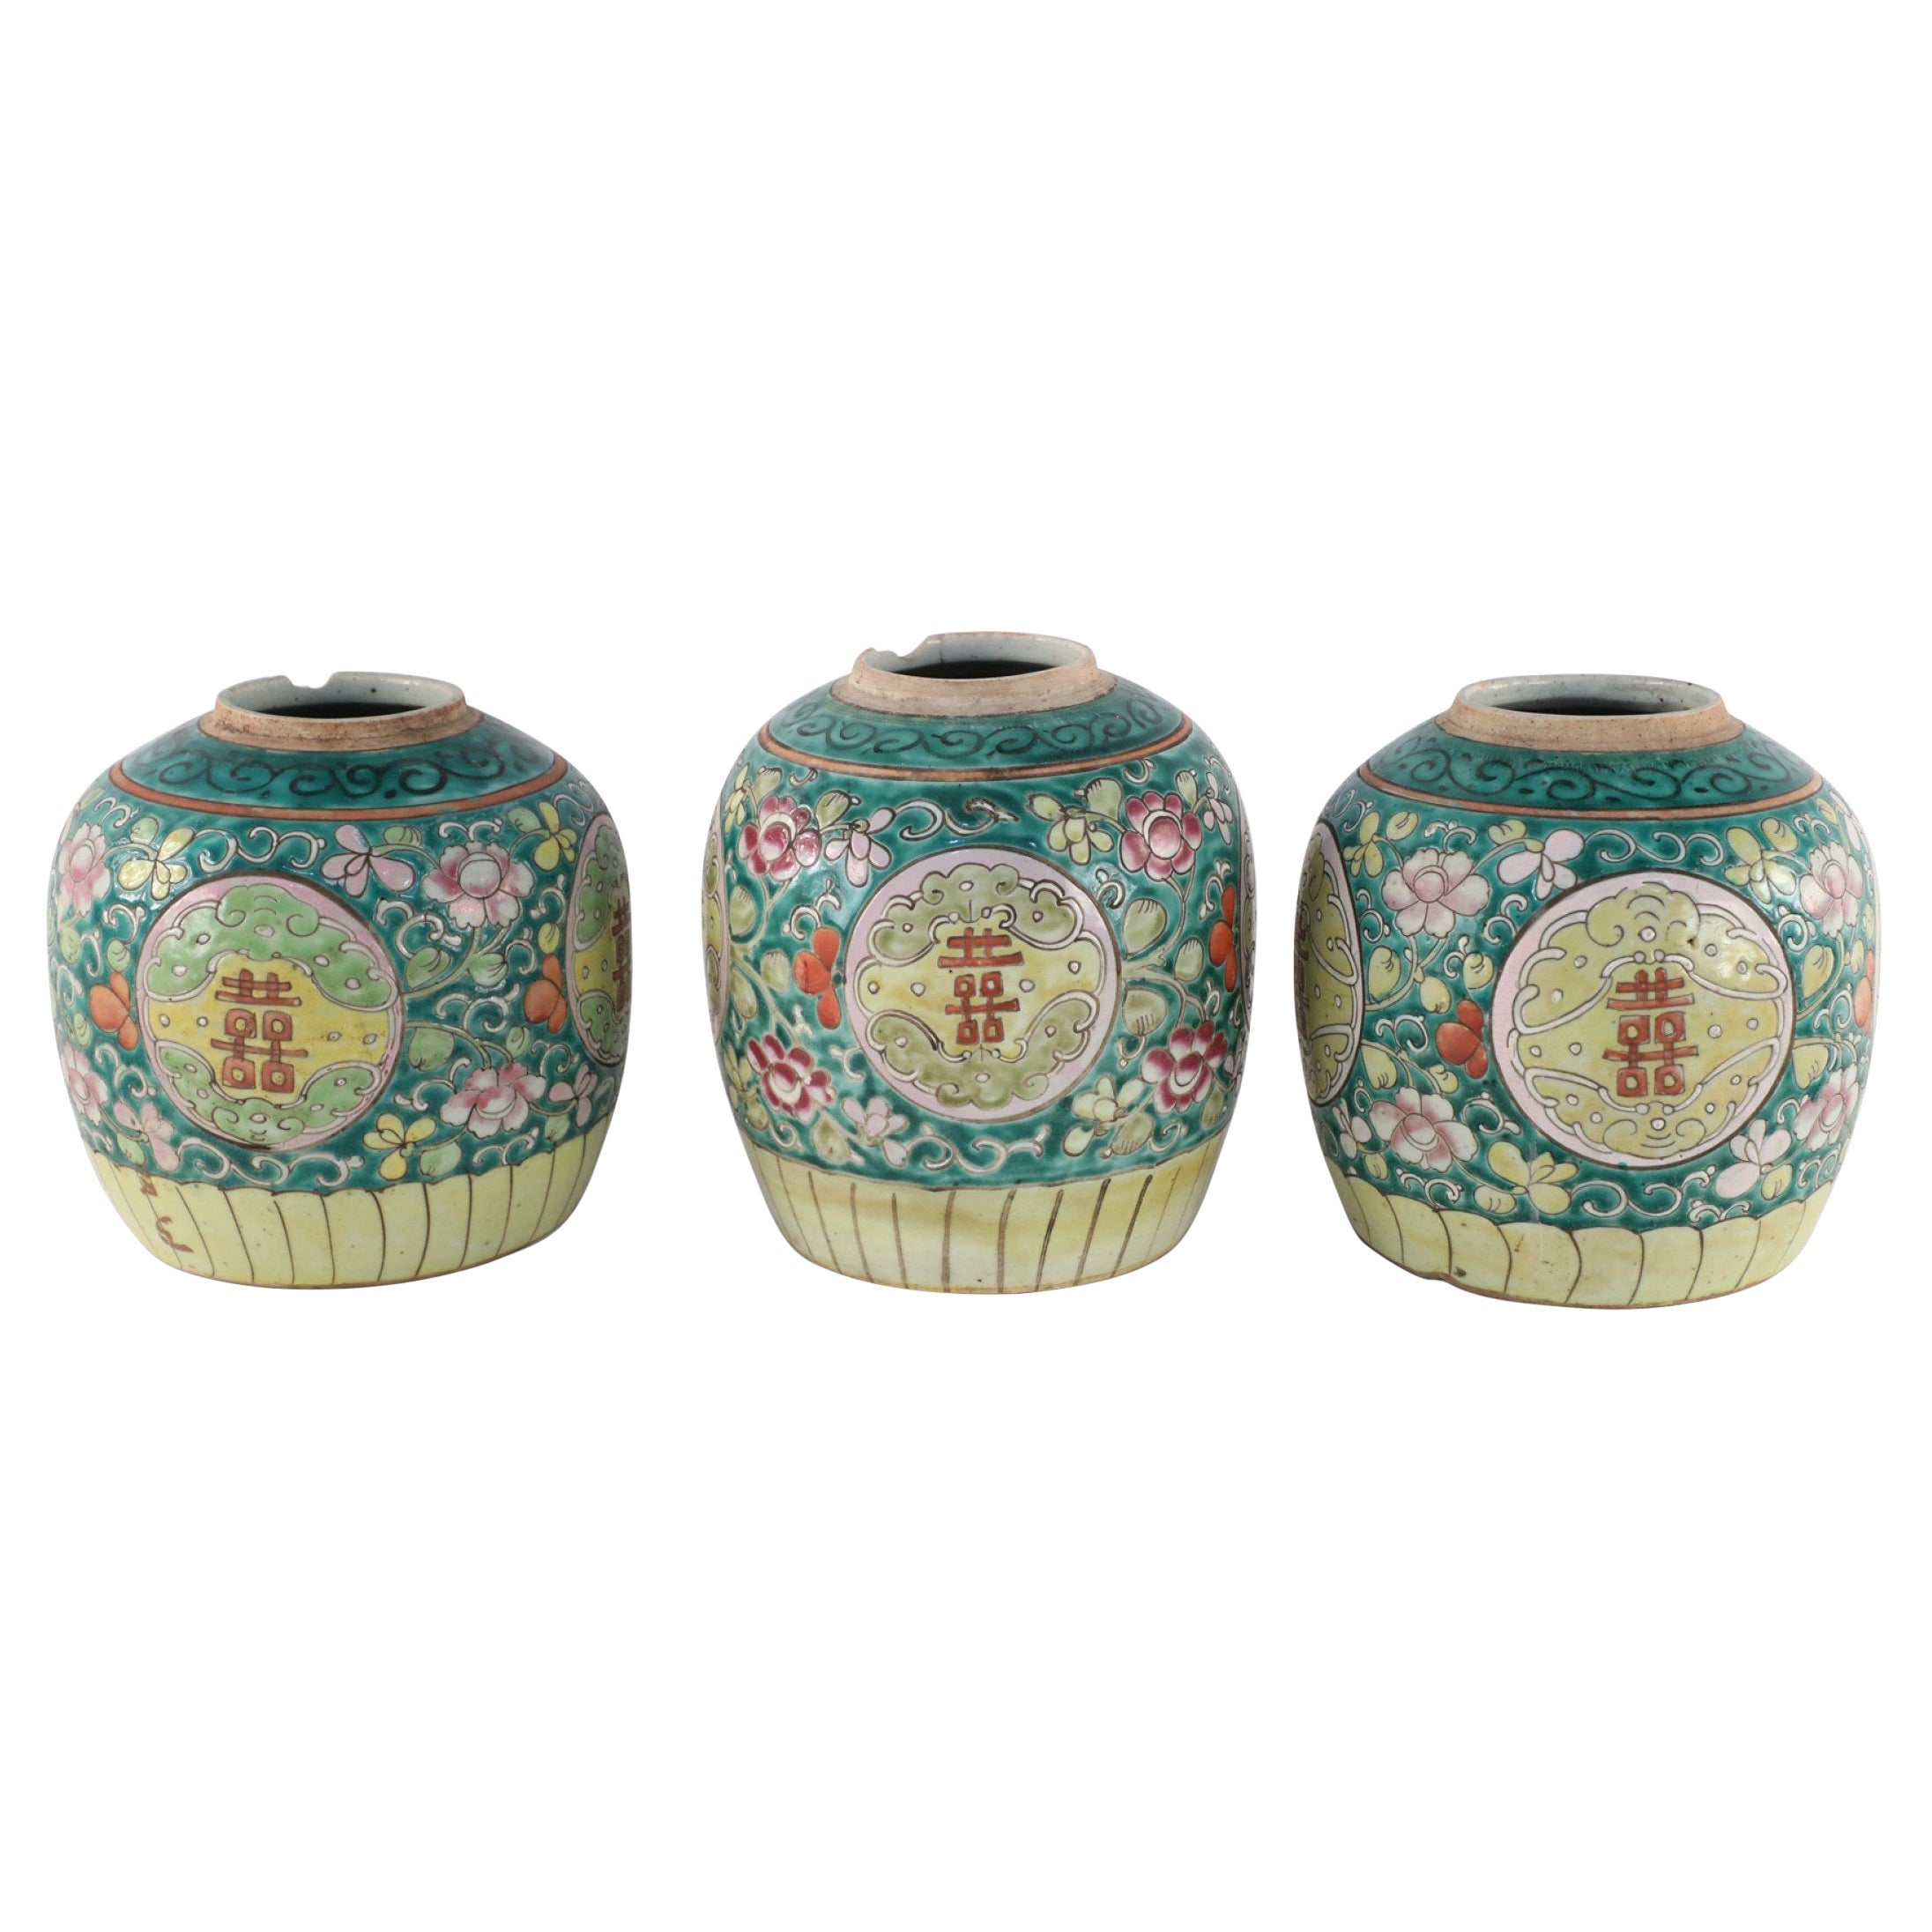 Chinese Green Floral Scrolling Design Ginger Jar Vases For Sale